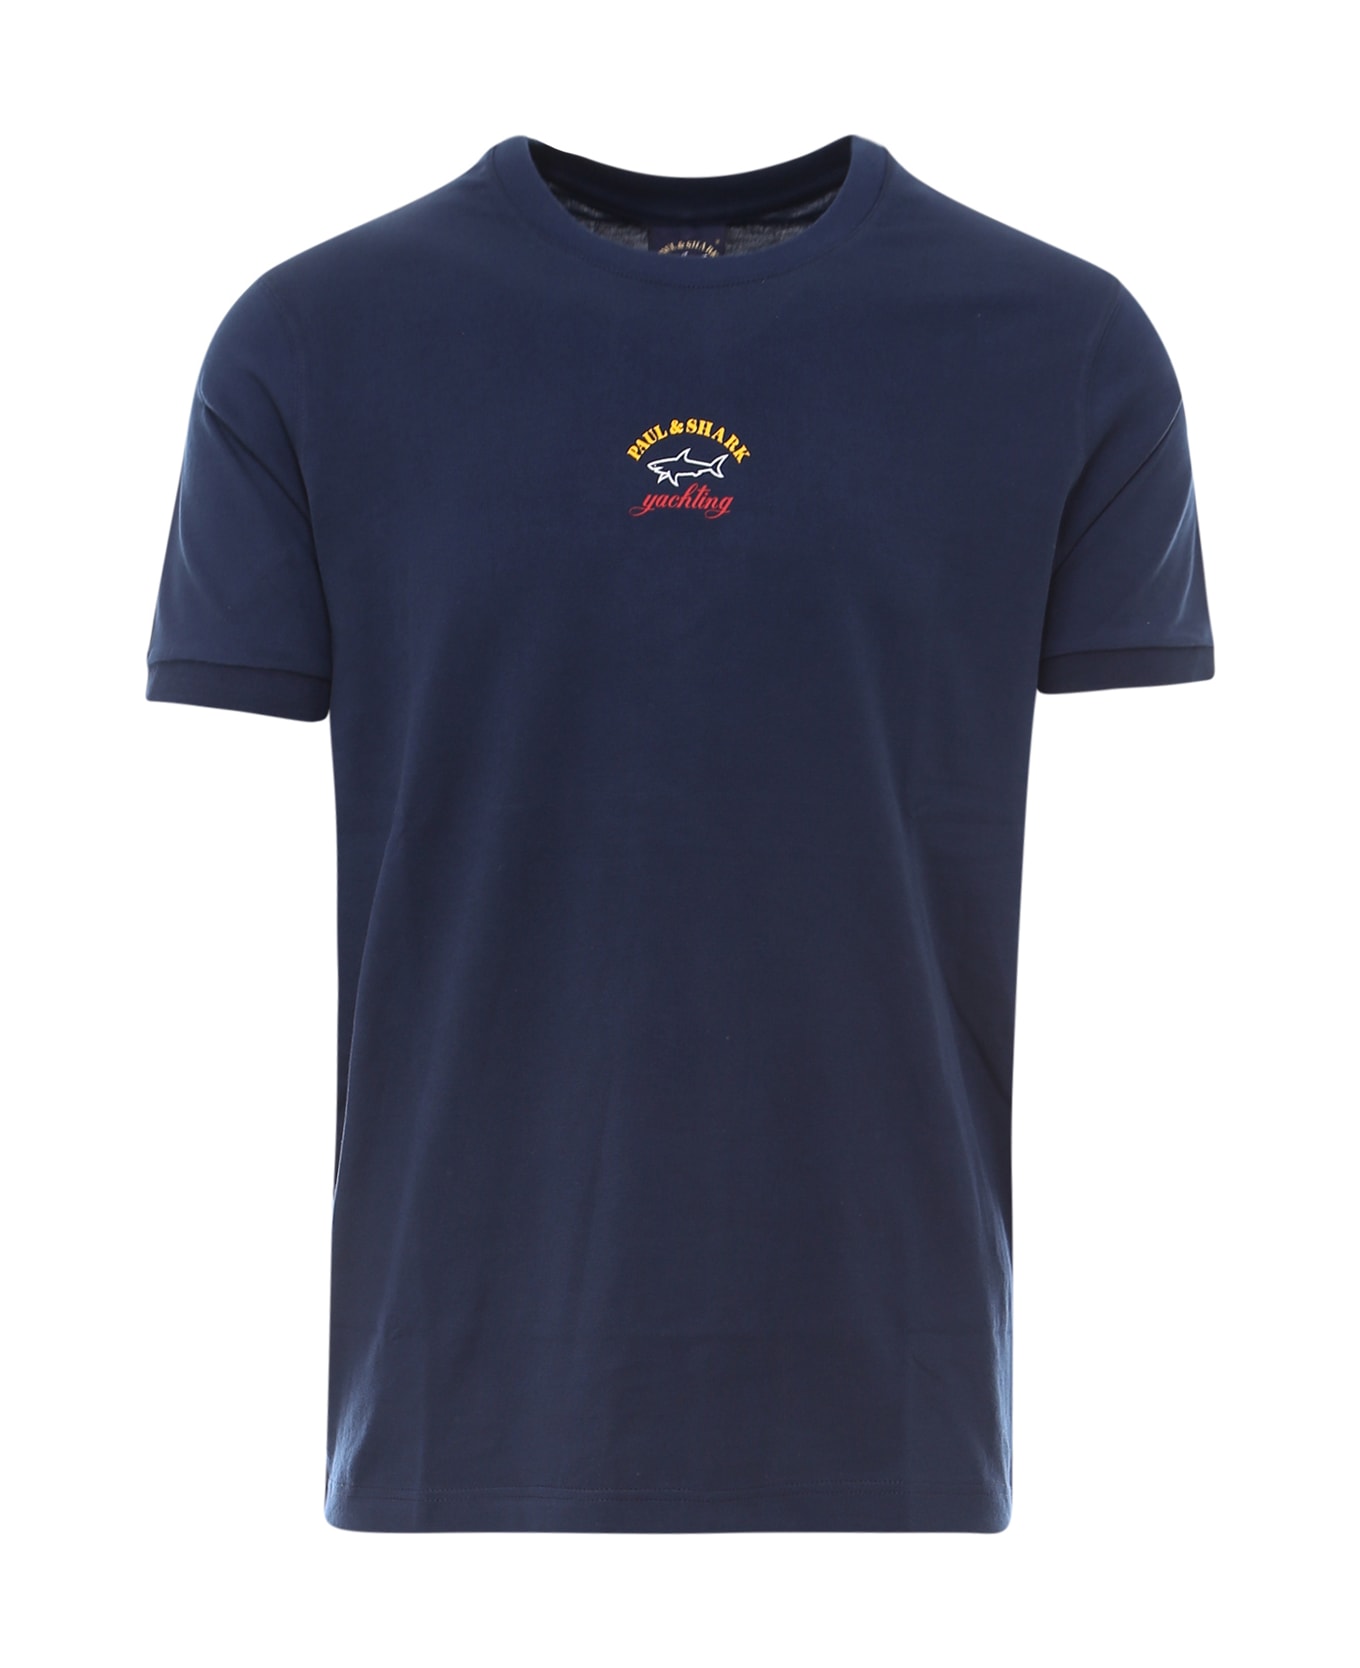 Paul&Shark T-shirt - Blue